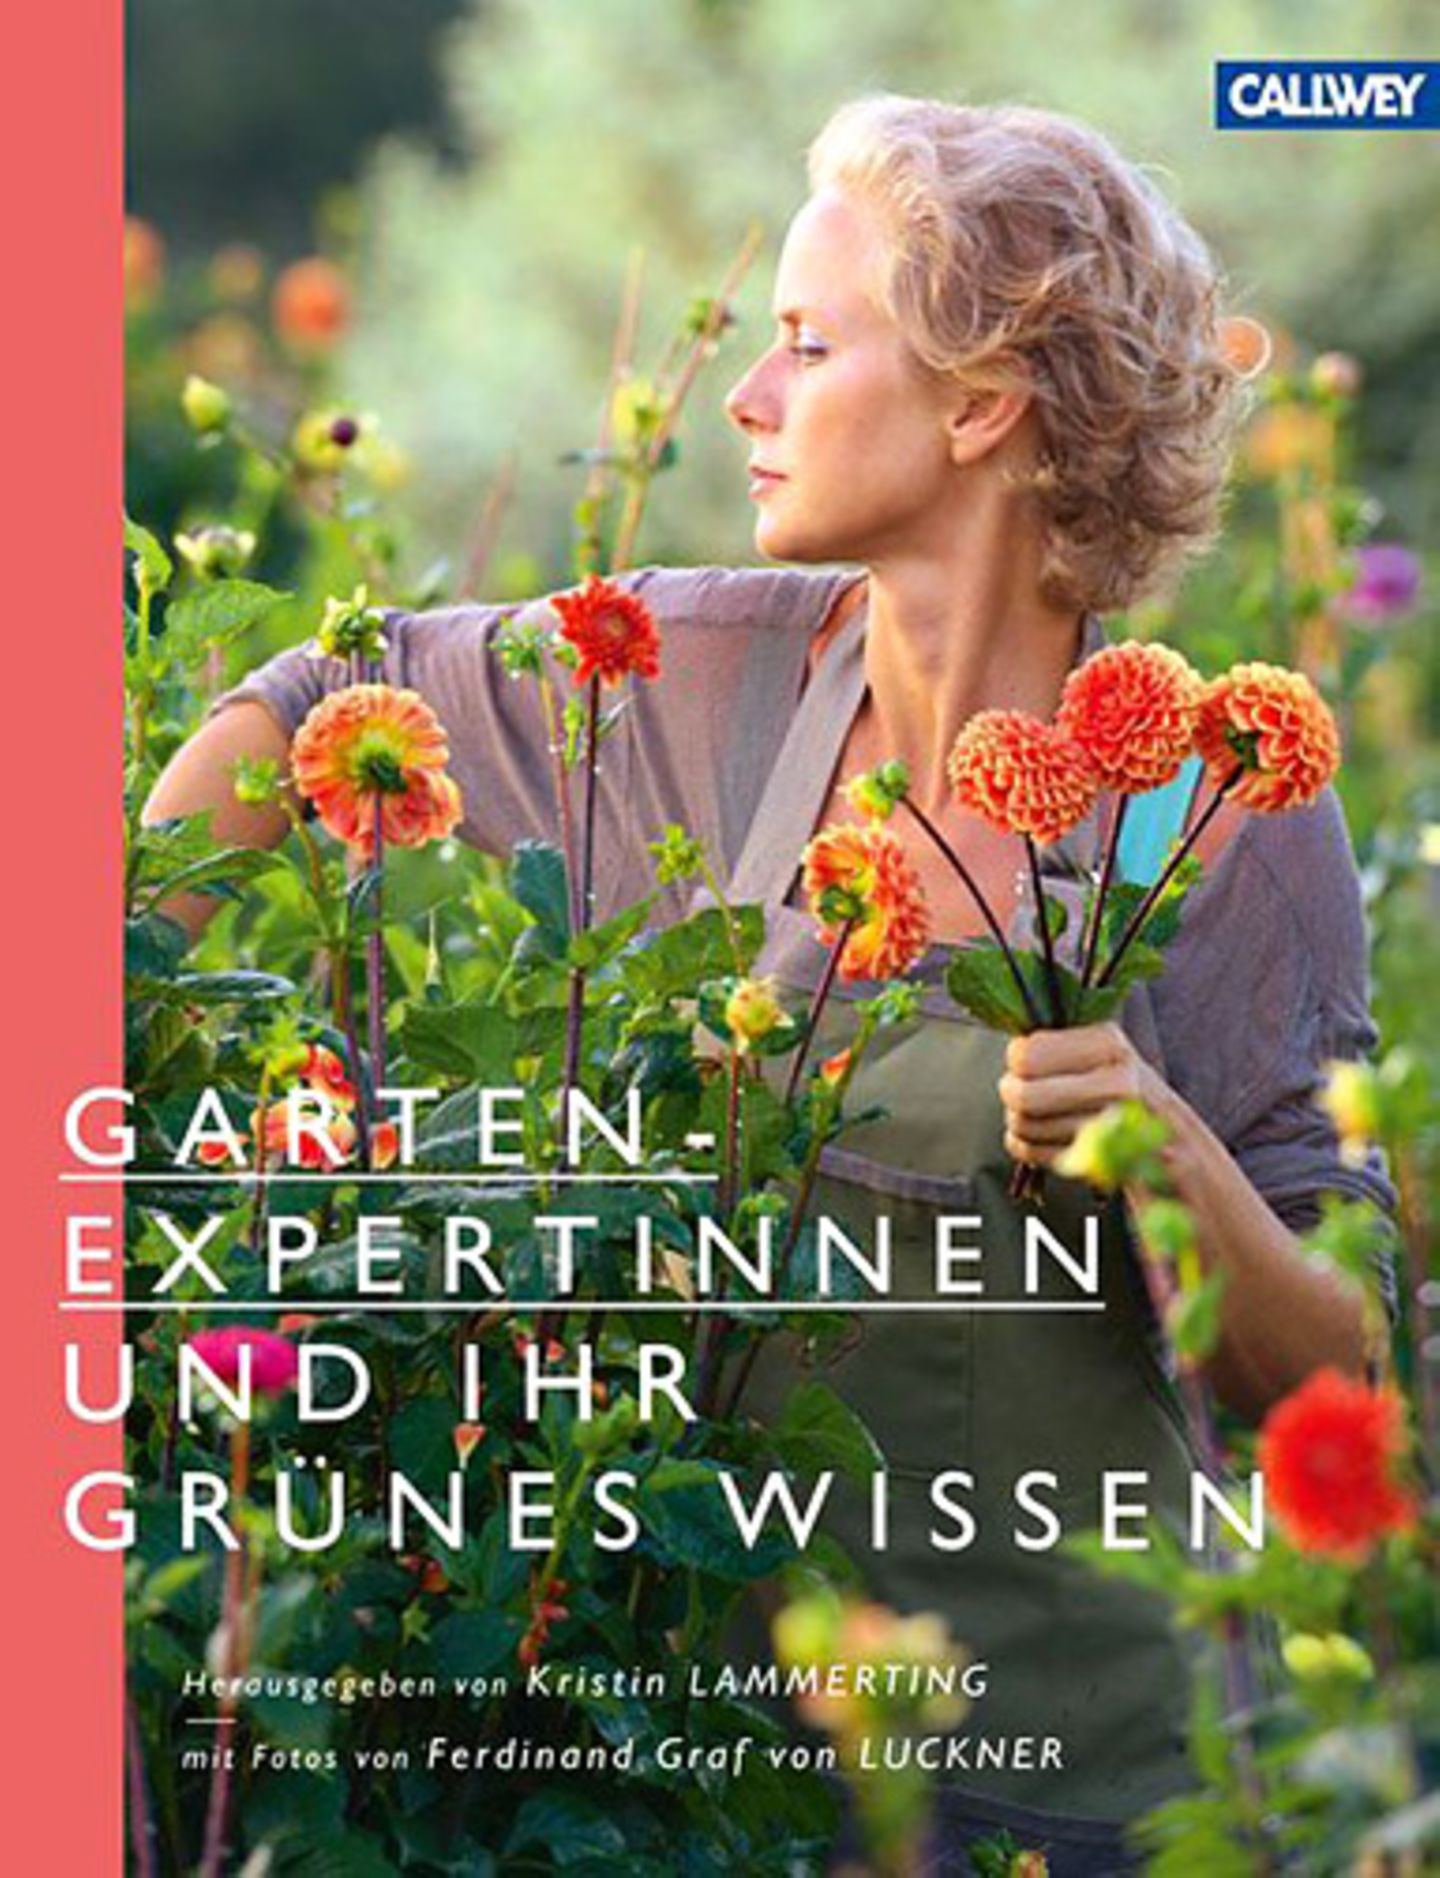 Auf der Frauen-Seite: "Gartenexpertinnen und ihr grünes Wissen" von Kristin Lammerting